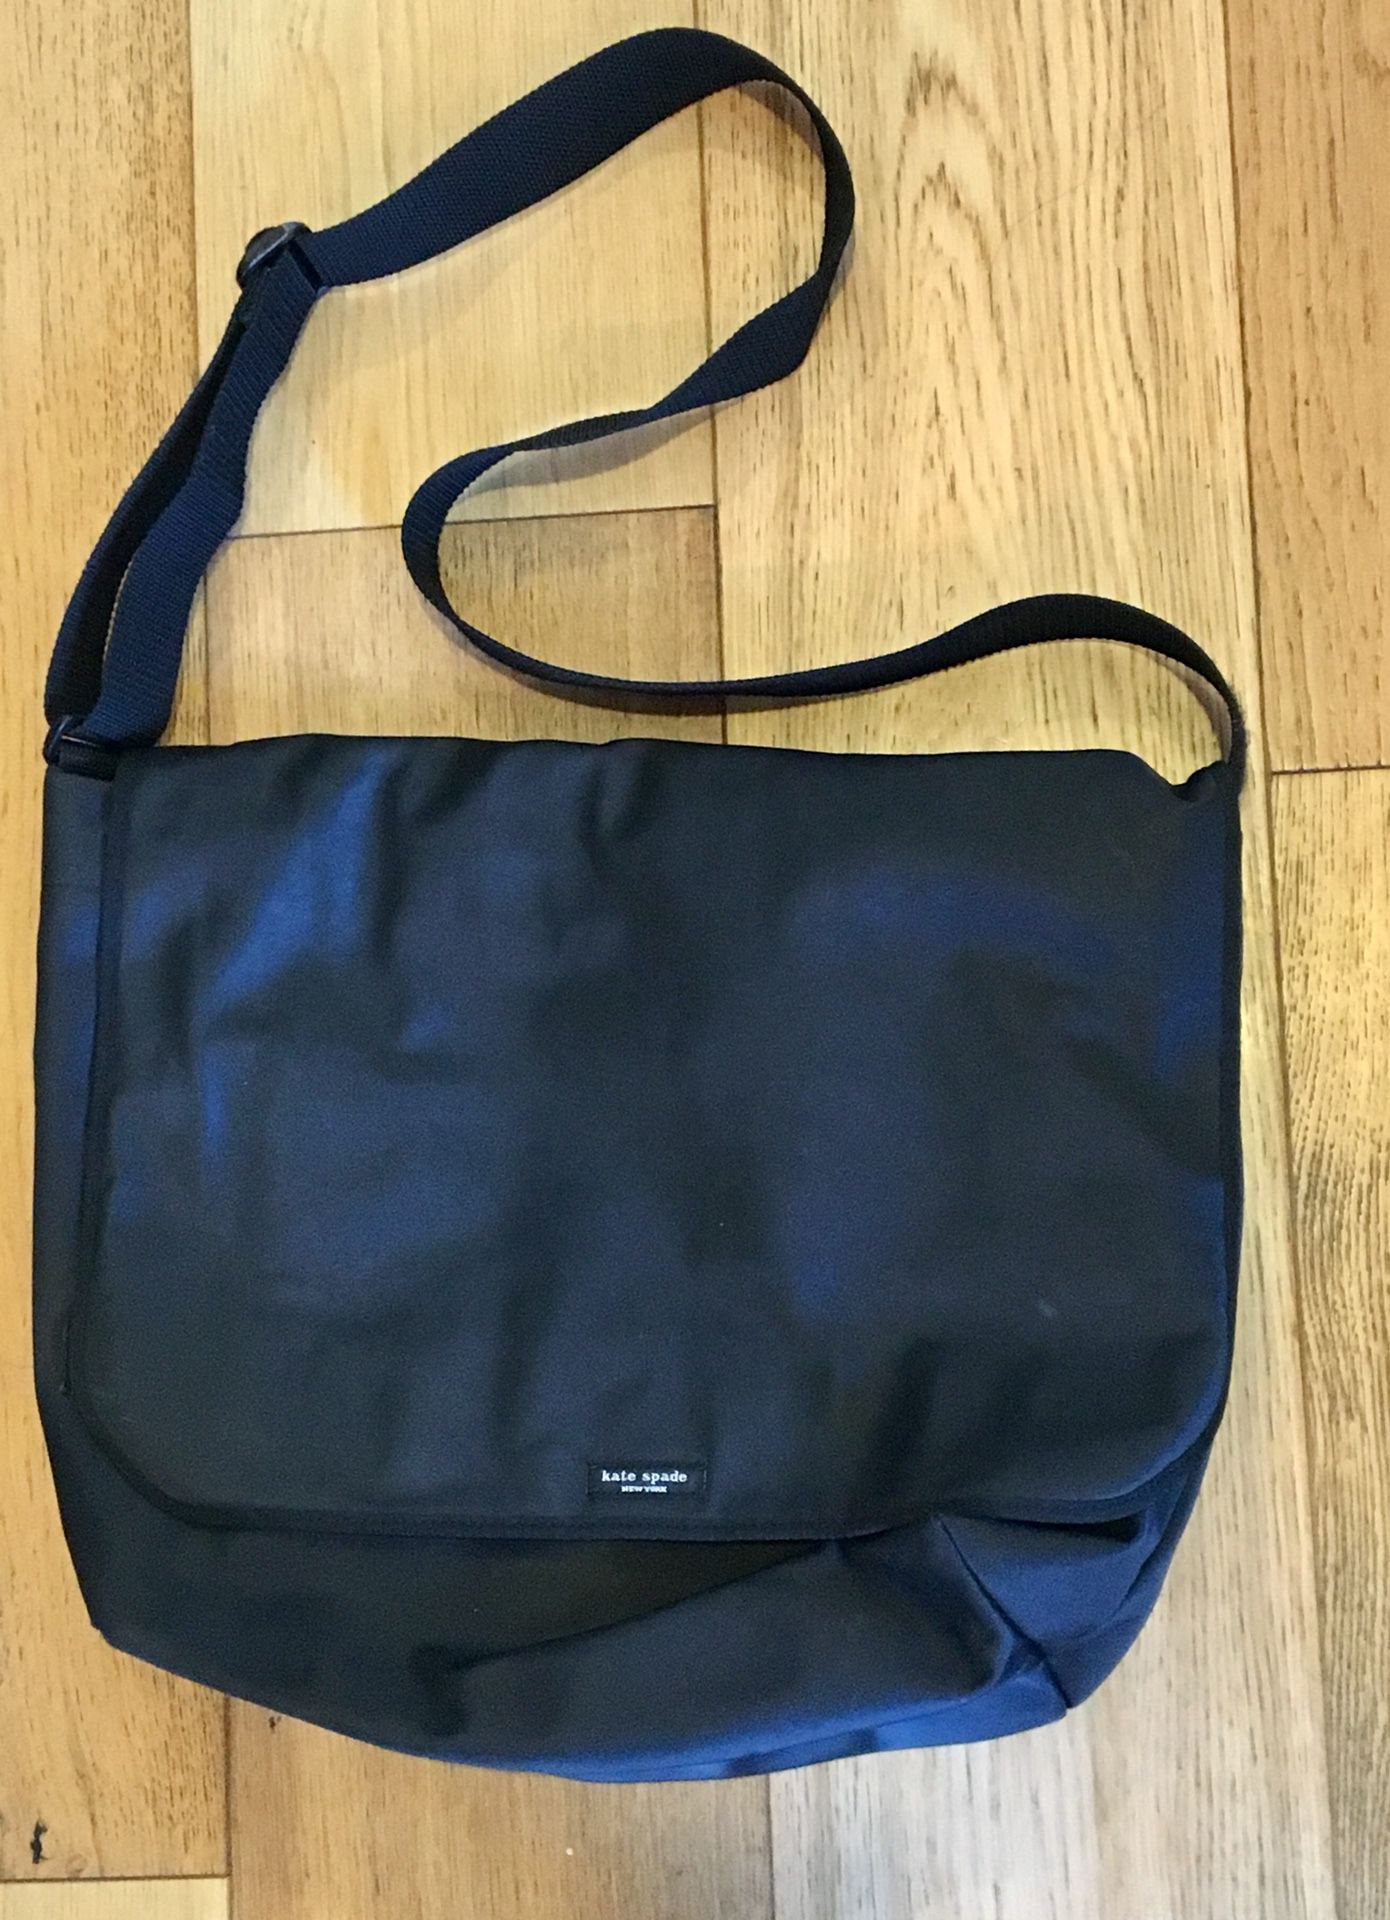 Kate Spade Black Messenger/Laptop Bag